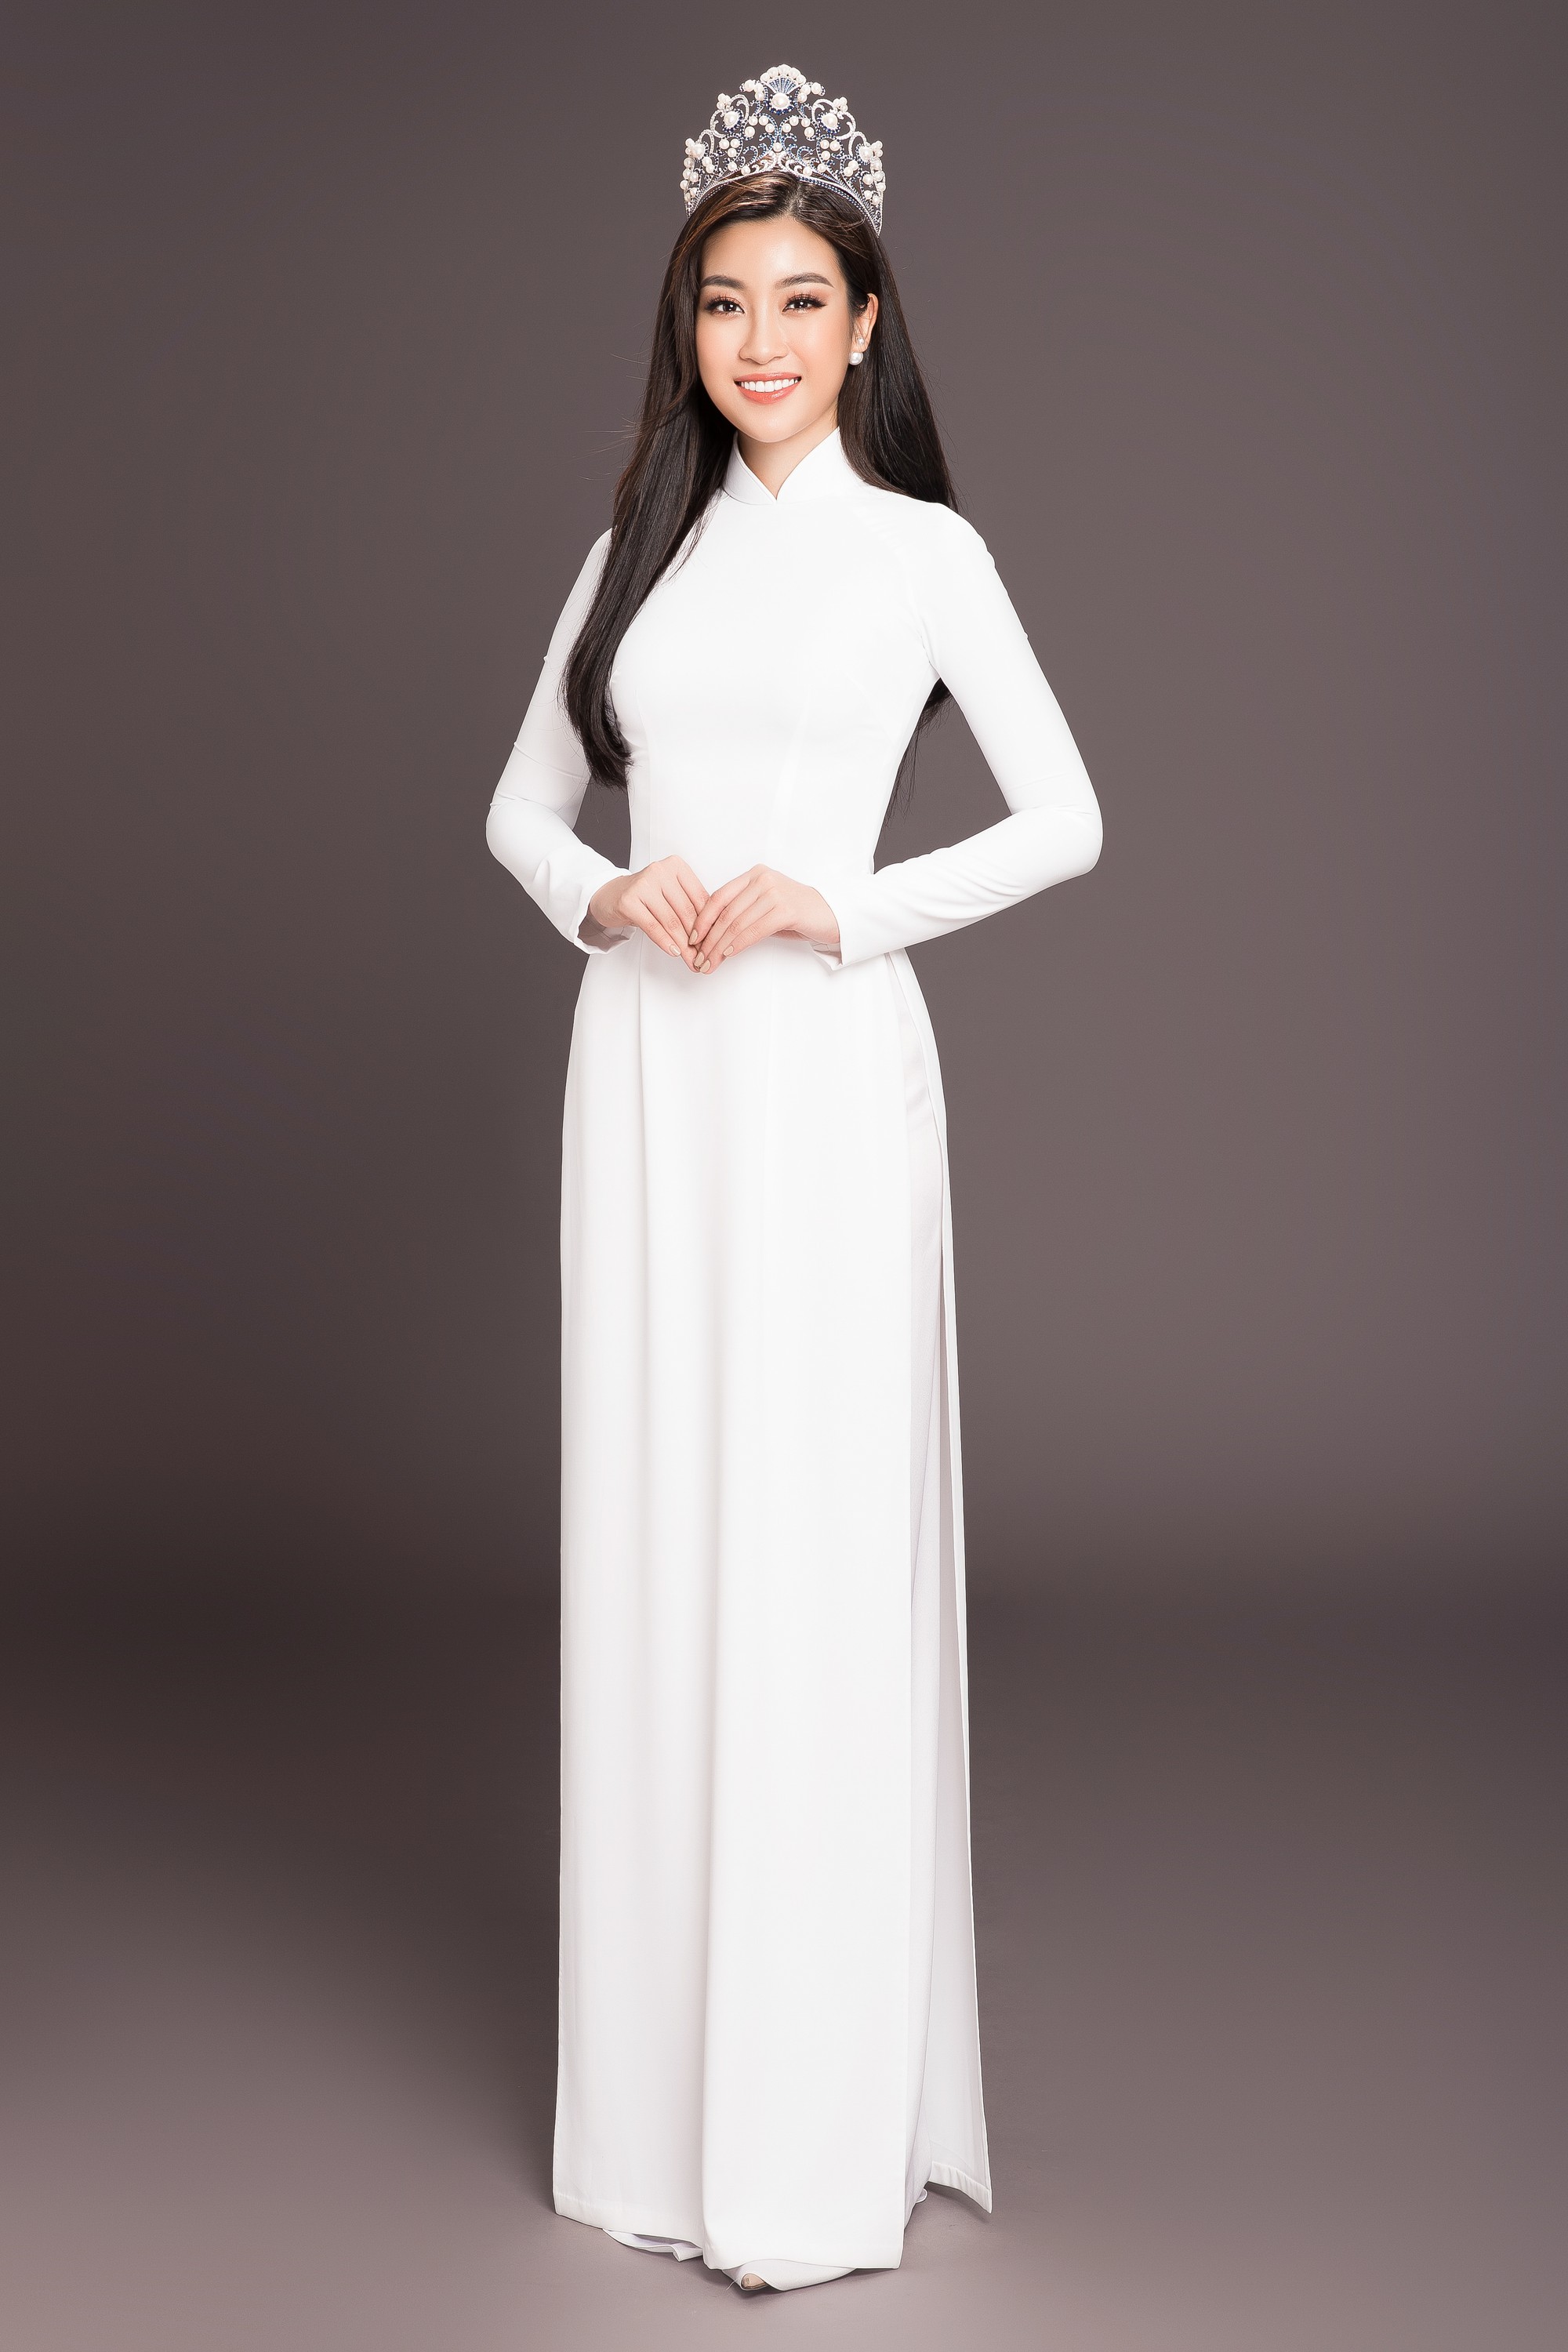 Không váy áo gợi cảm, Hoa hậu Kỳ Duyên, Đặng Thu Thảo lại gợi nhớ cả bầu trời thanh xuân khi diện áo dài trắng nữ sinh - Ảnh 11.